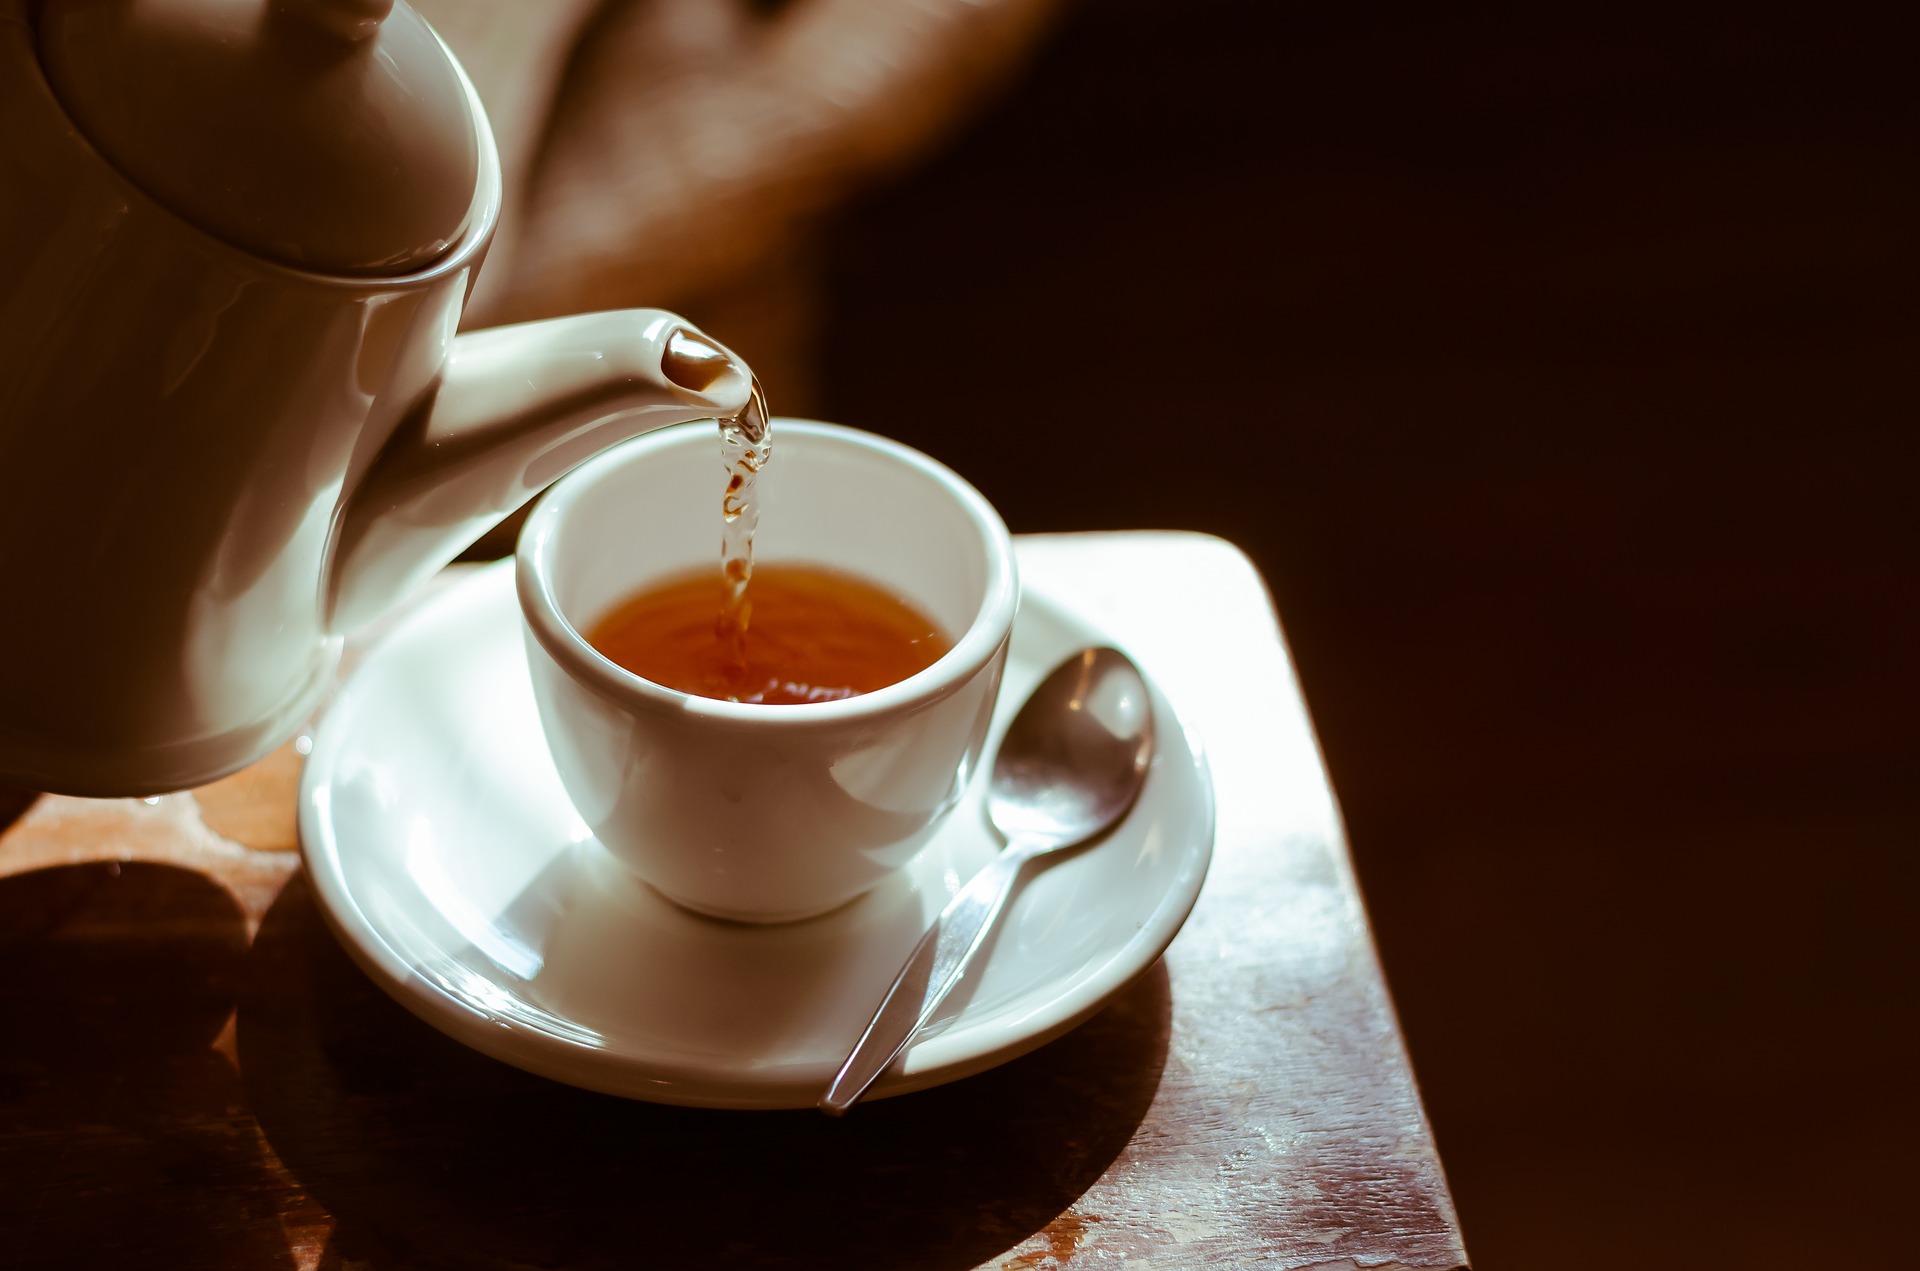 Rengeteg gyógyító hatása van a zöld teának. Érdemes a nehezen induló reggeleken bevetni.